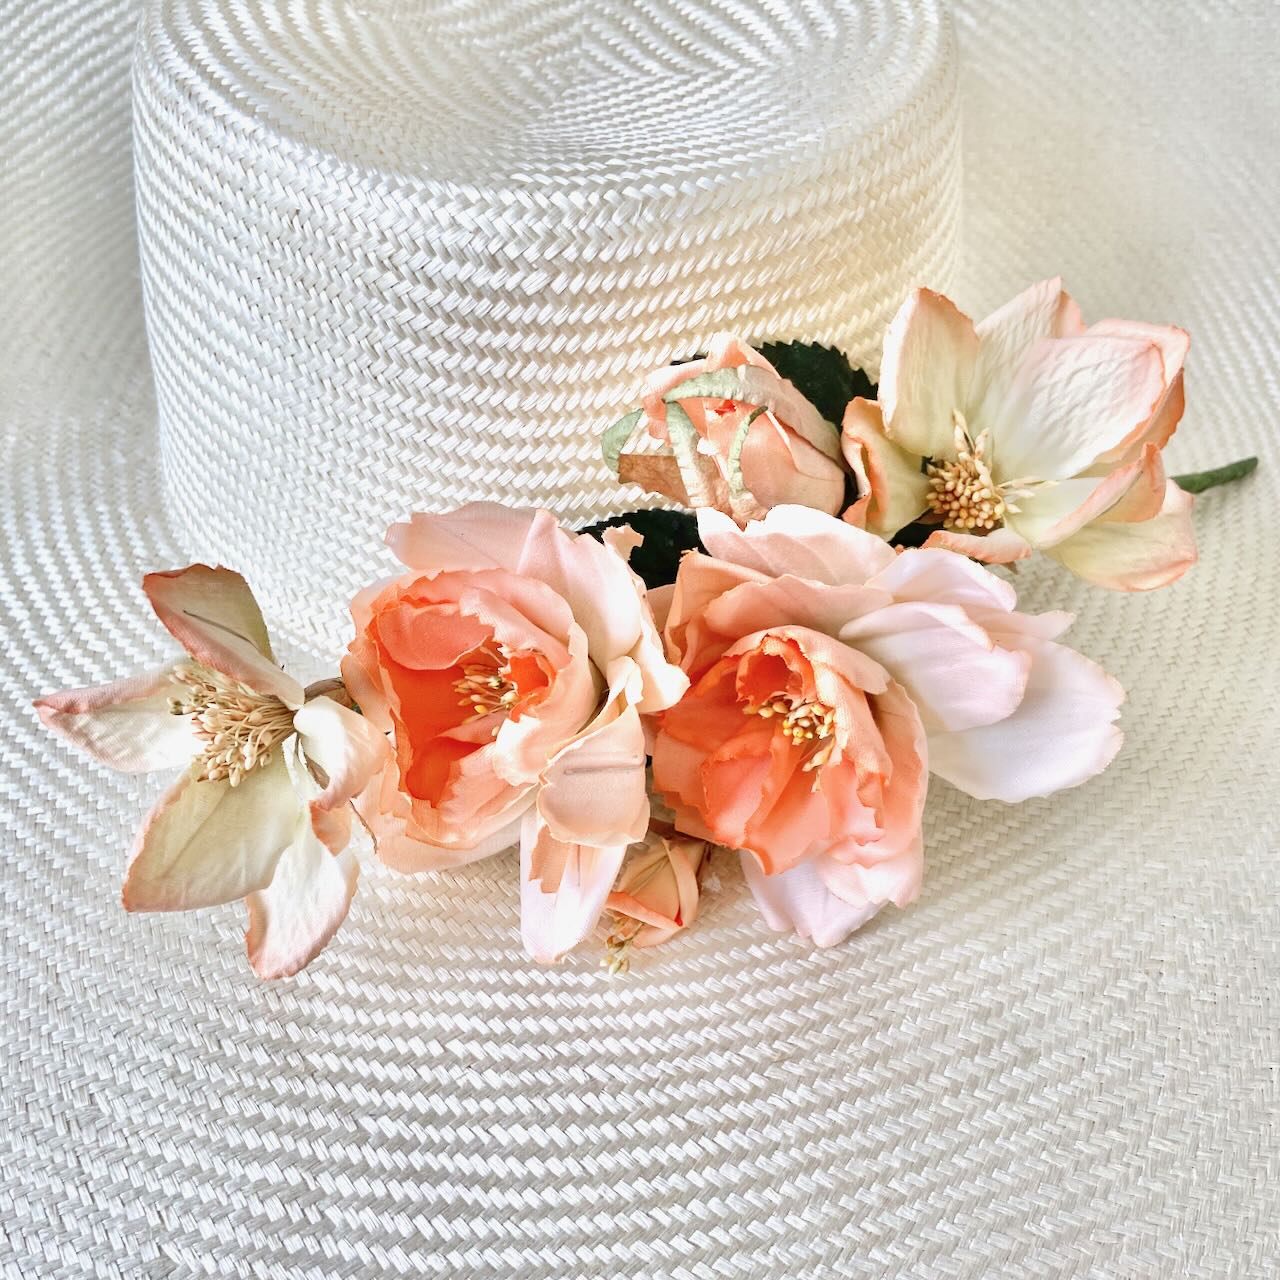     Vintage_Rose_Bouquet